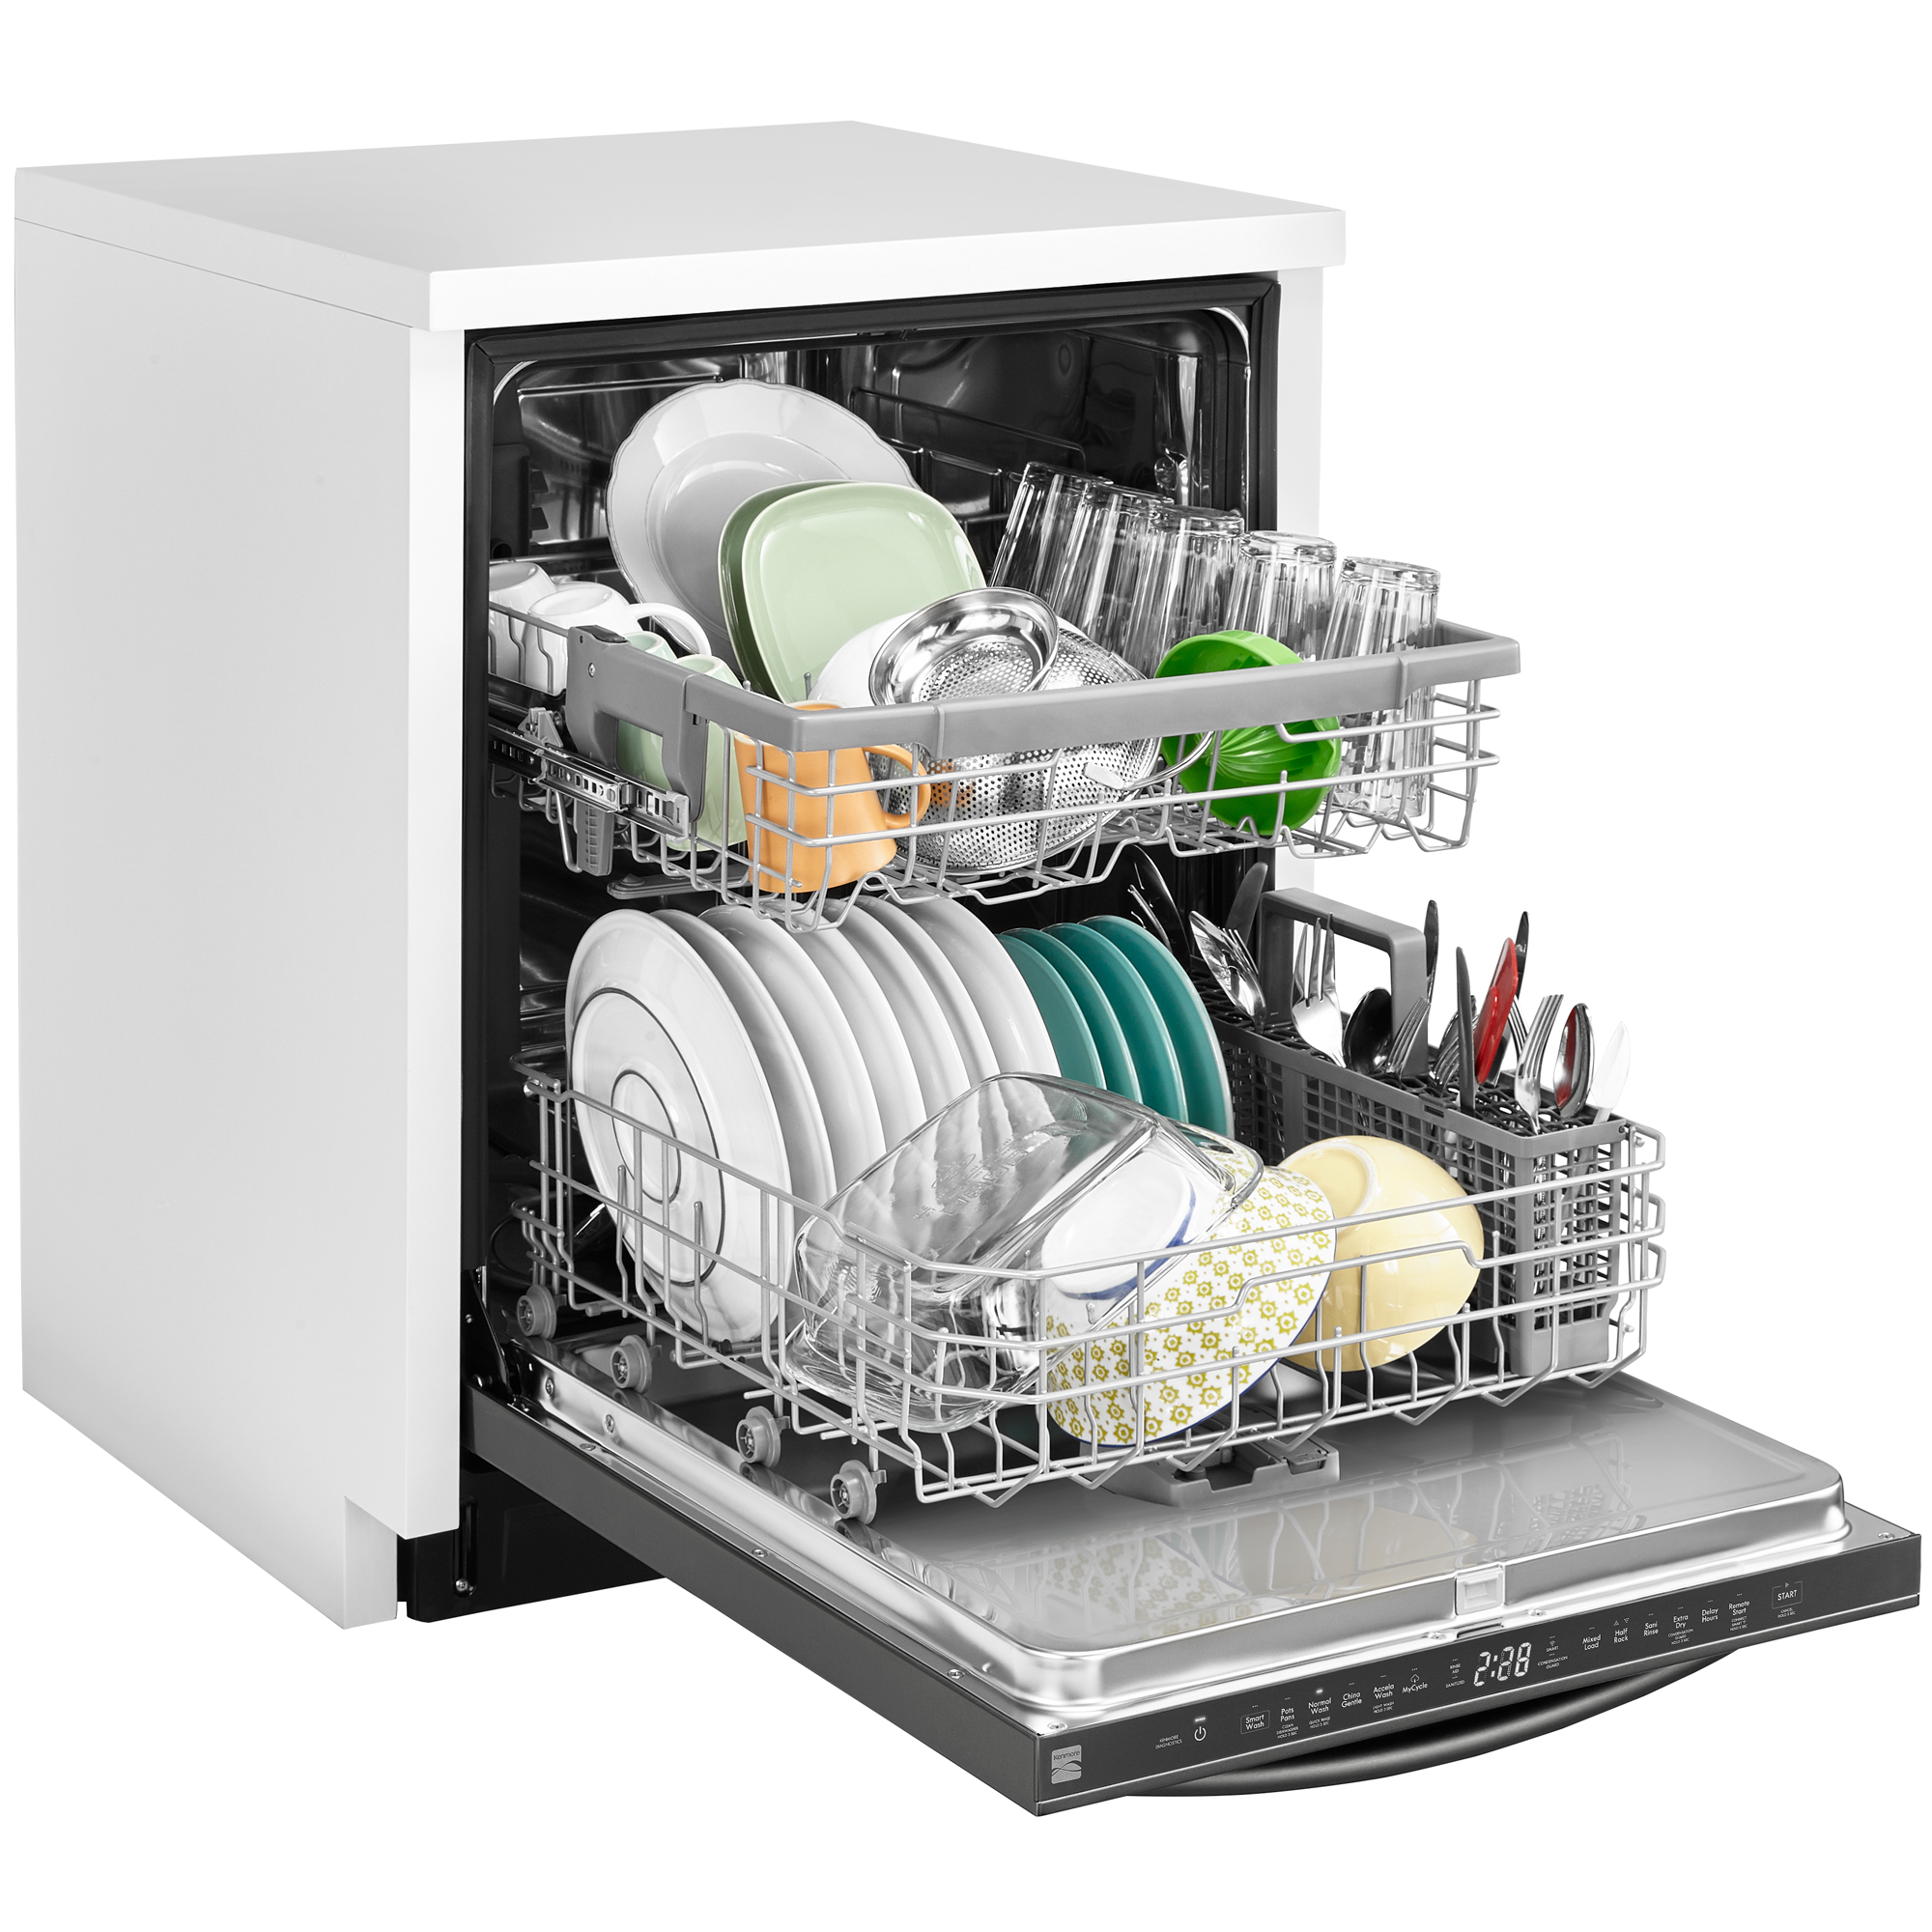 kenmore dishwasher 14677 reviews